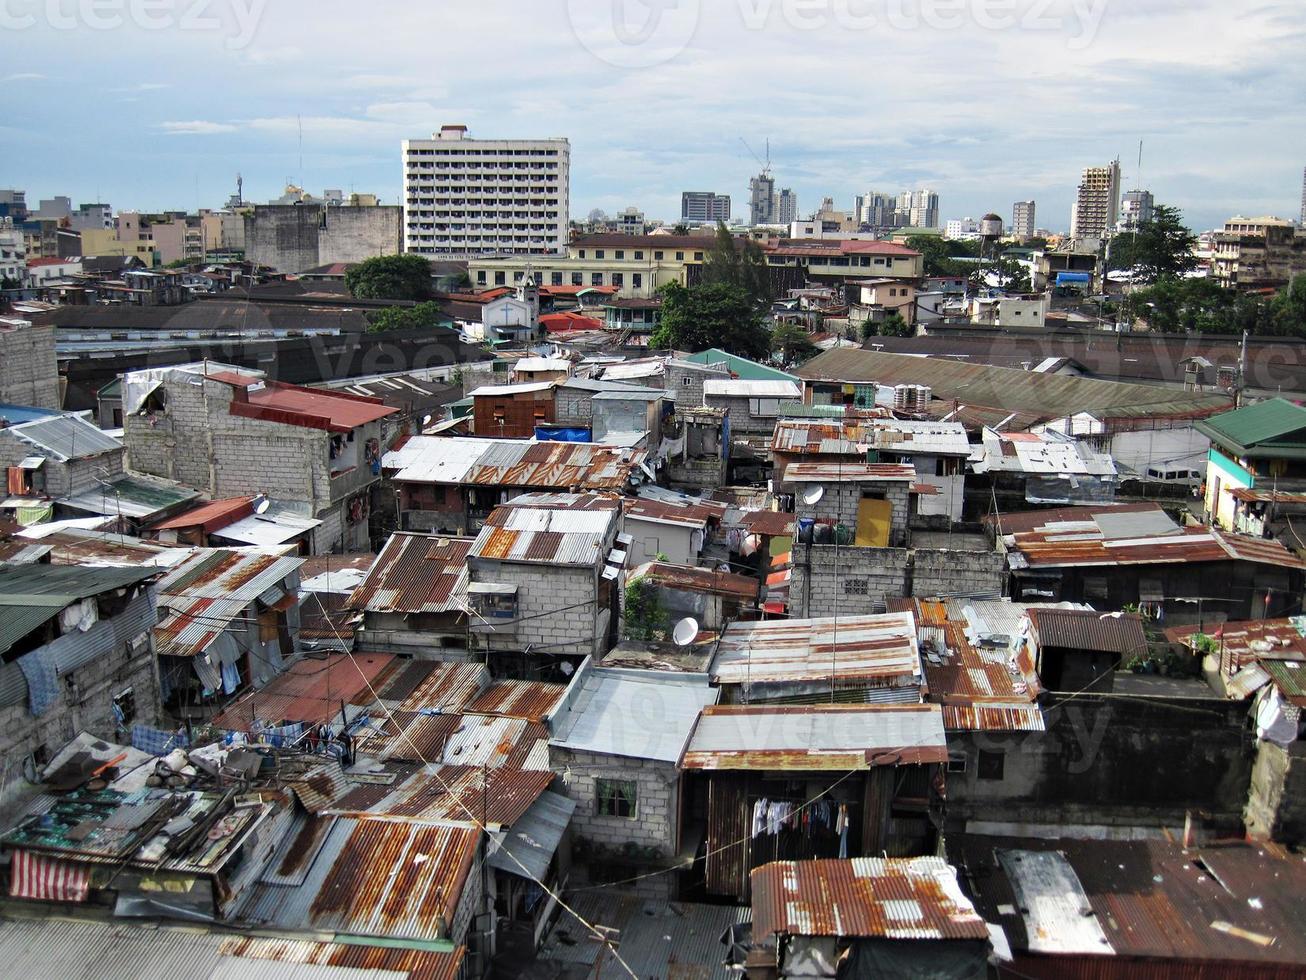 posseiros barracos e casas em uma área urbana da favela foto